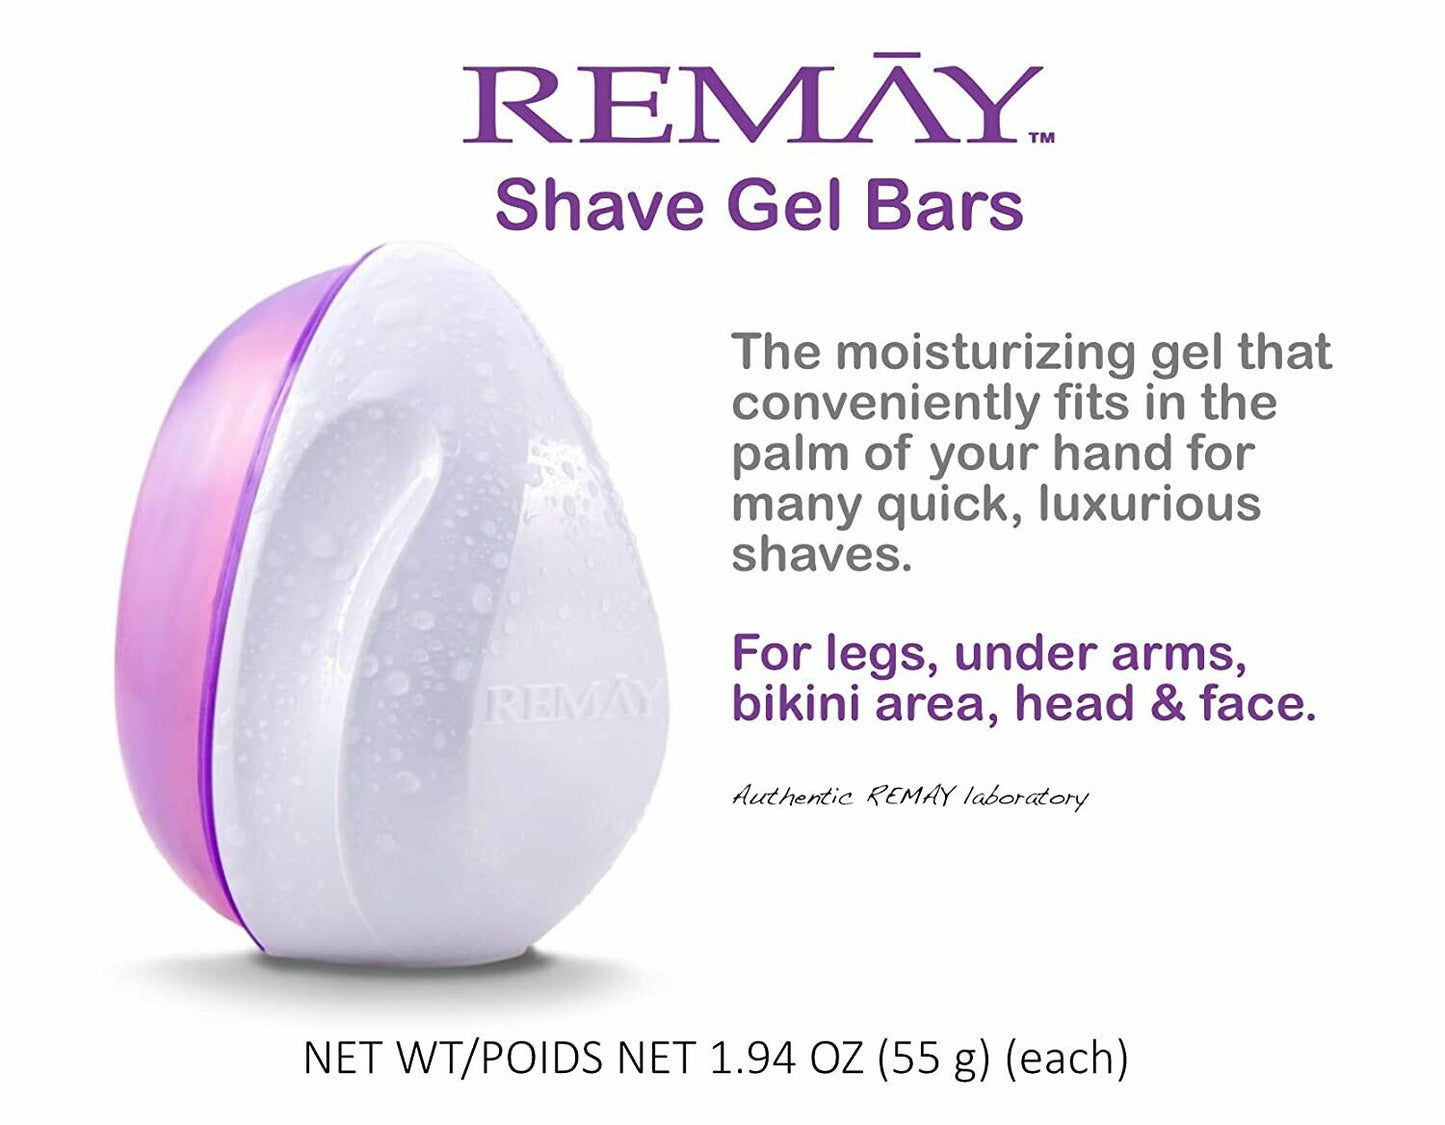 REMAY Glide Shave | Shave Gel Bar (3 PACK)